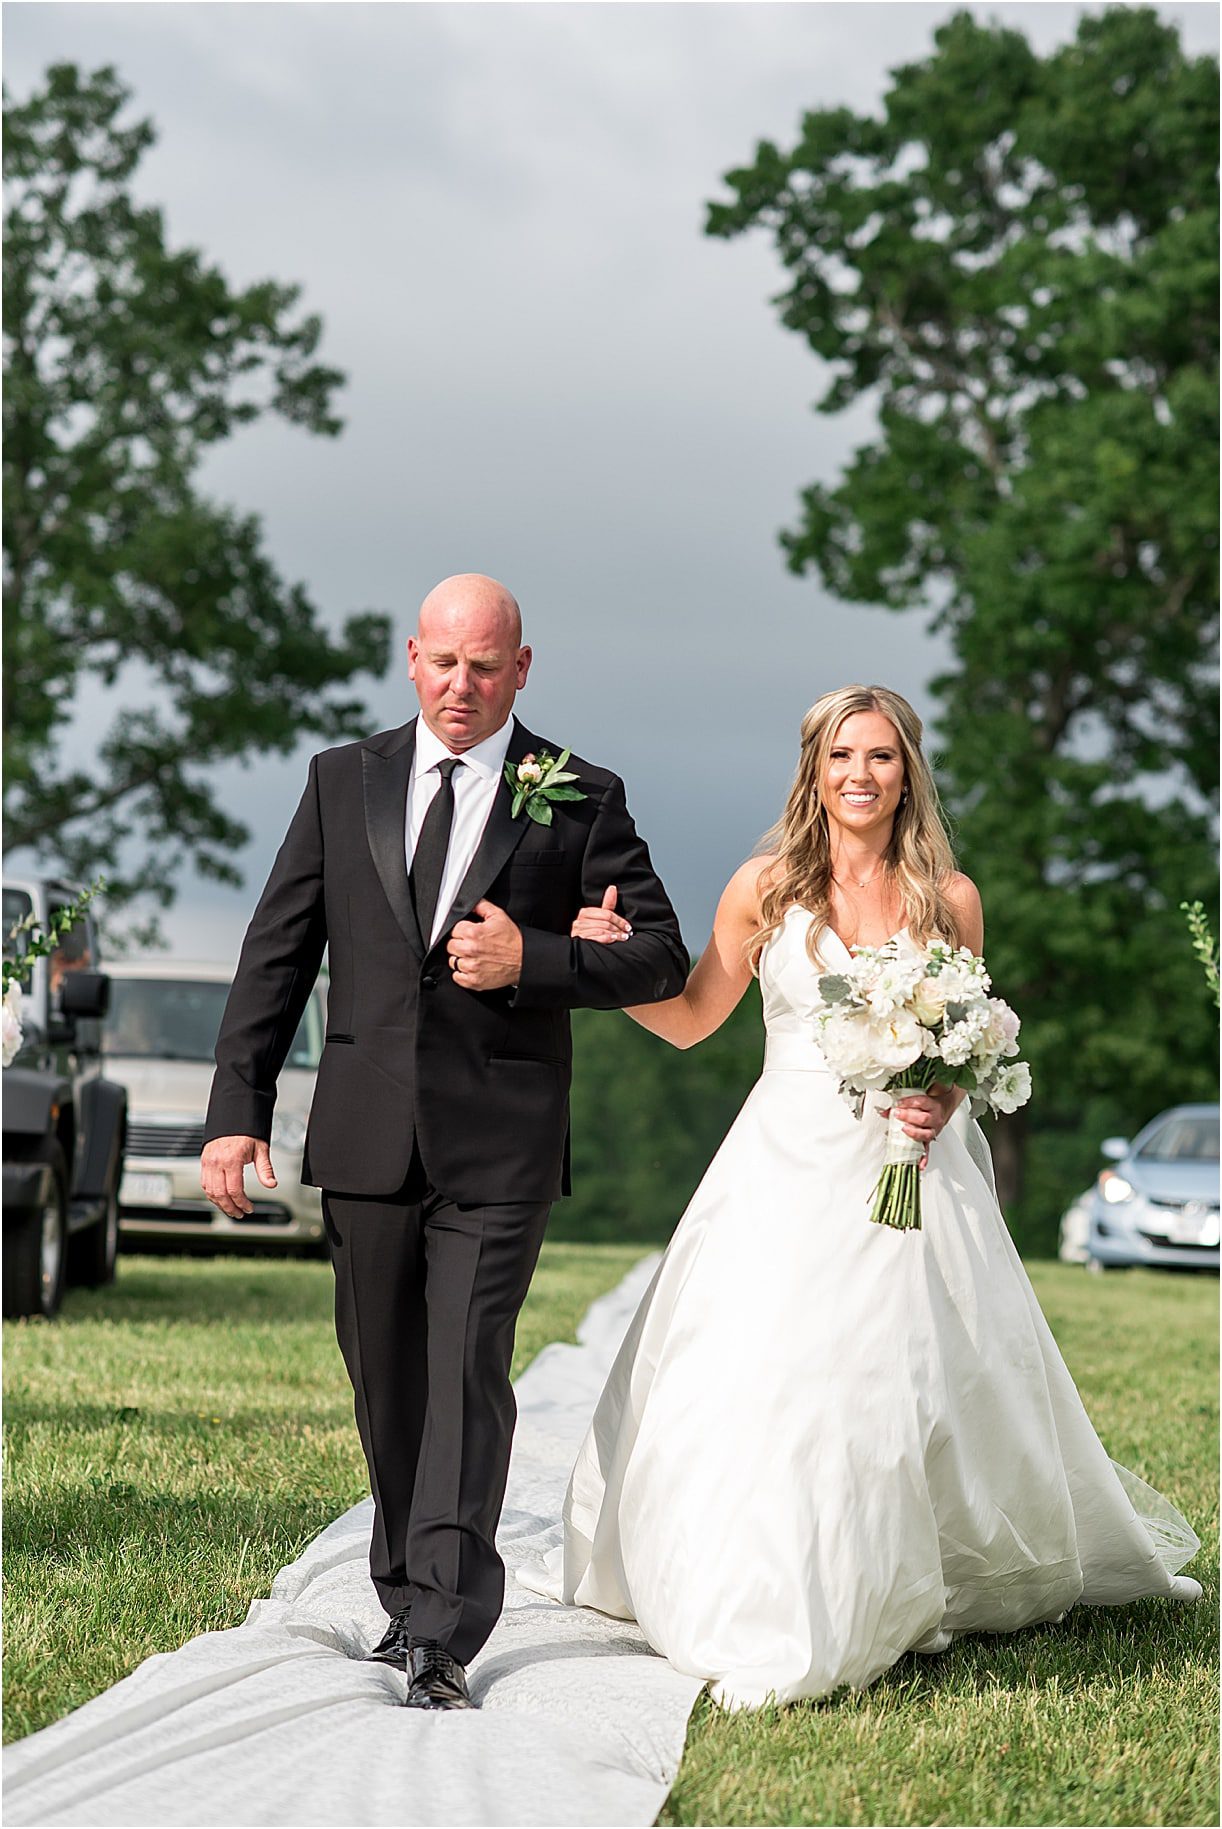 Bride Aisle | Drive In Wedding Ideas | COVID Wedding Ceremony Ideas | Hill City Bride Virginia Weddings